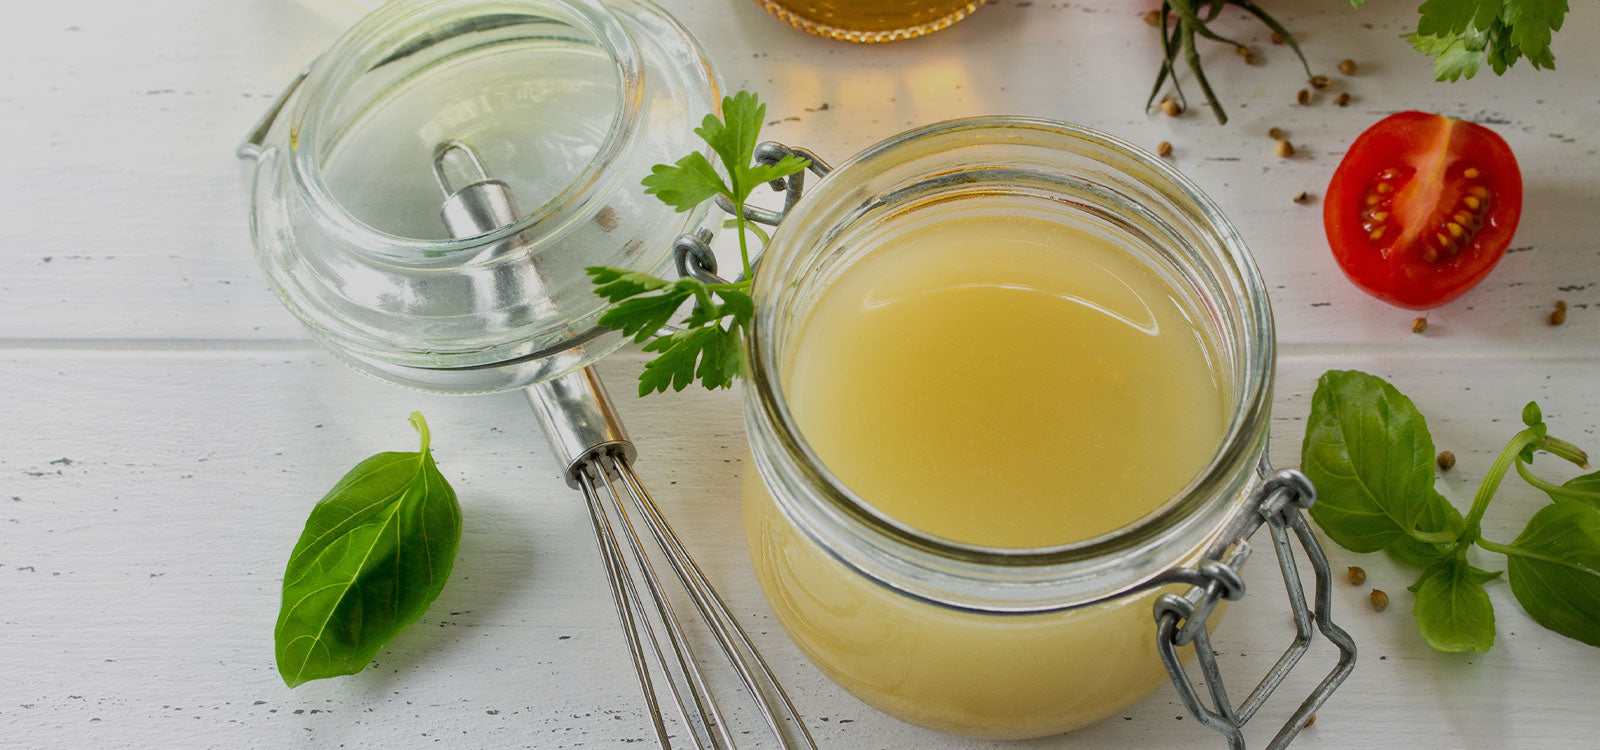 Мед с оливковым маслом. Оливковое масло и лимонный сок. Соус к креветкам оливковое масло, лимон, мед. Оливковое масло с медом и лимонным соком по утрам. Мед, лимон, яблочный уксус, женские руки.